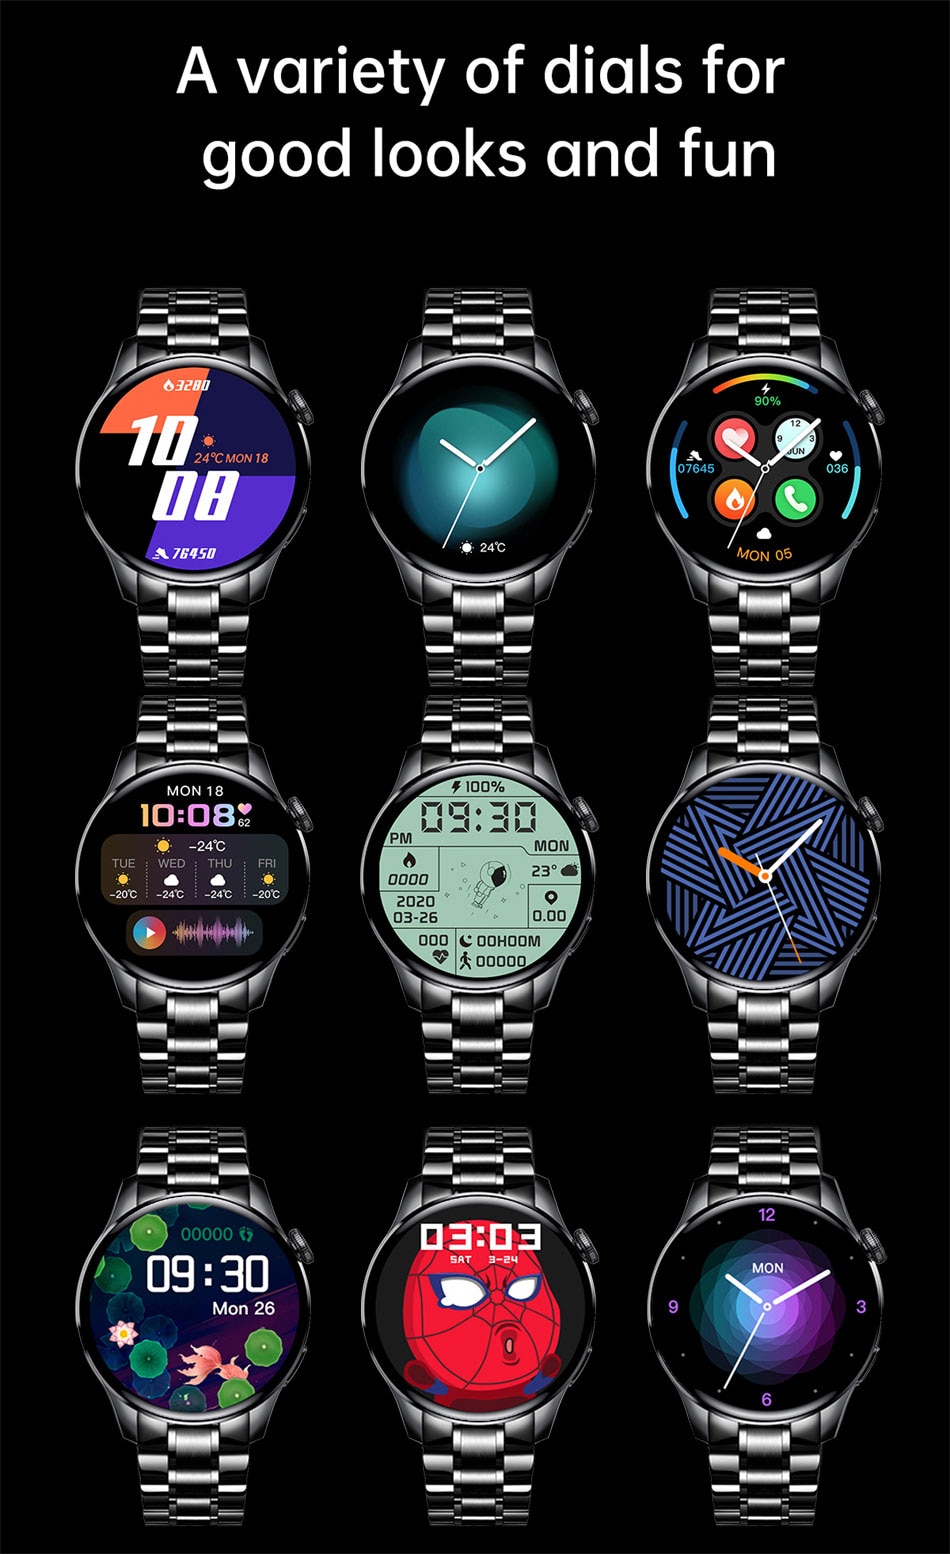 Watch Interface and Customization